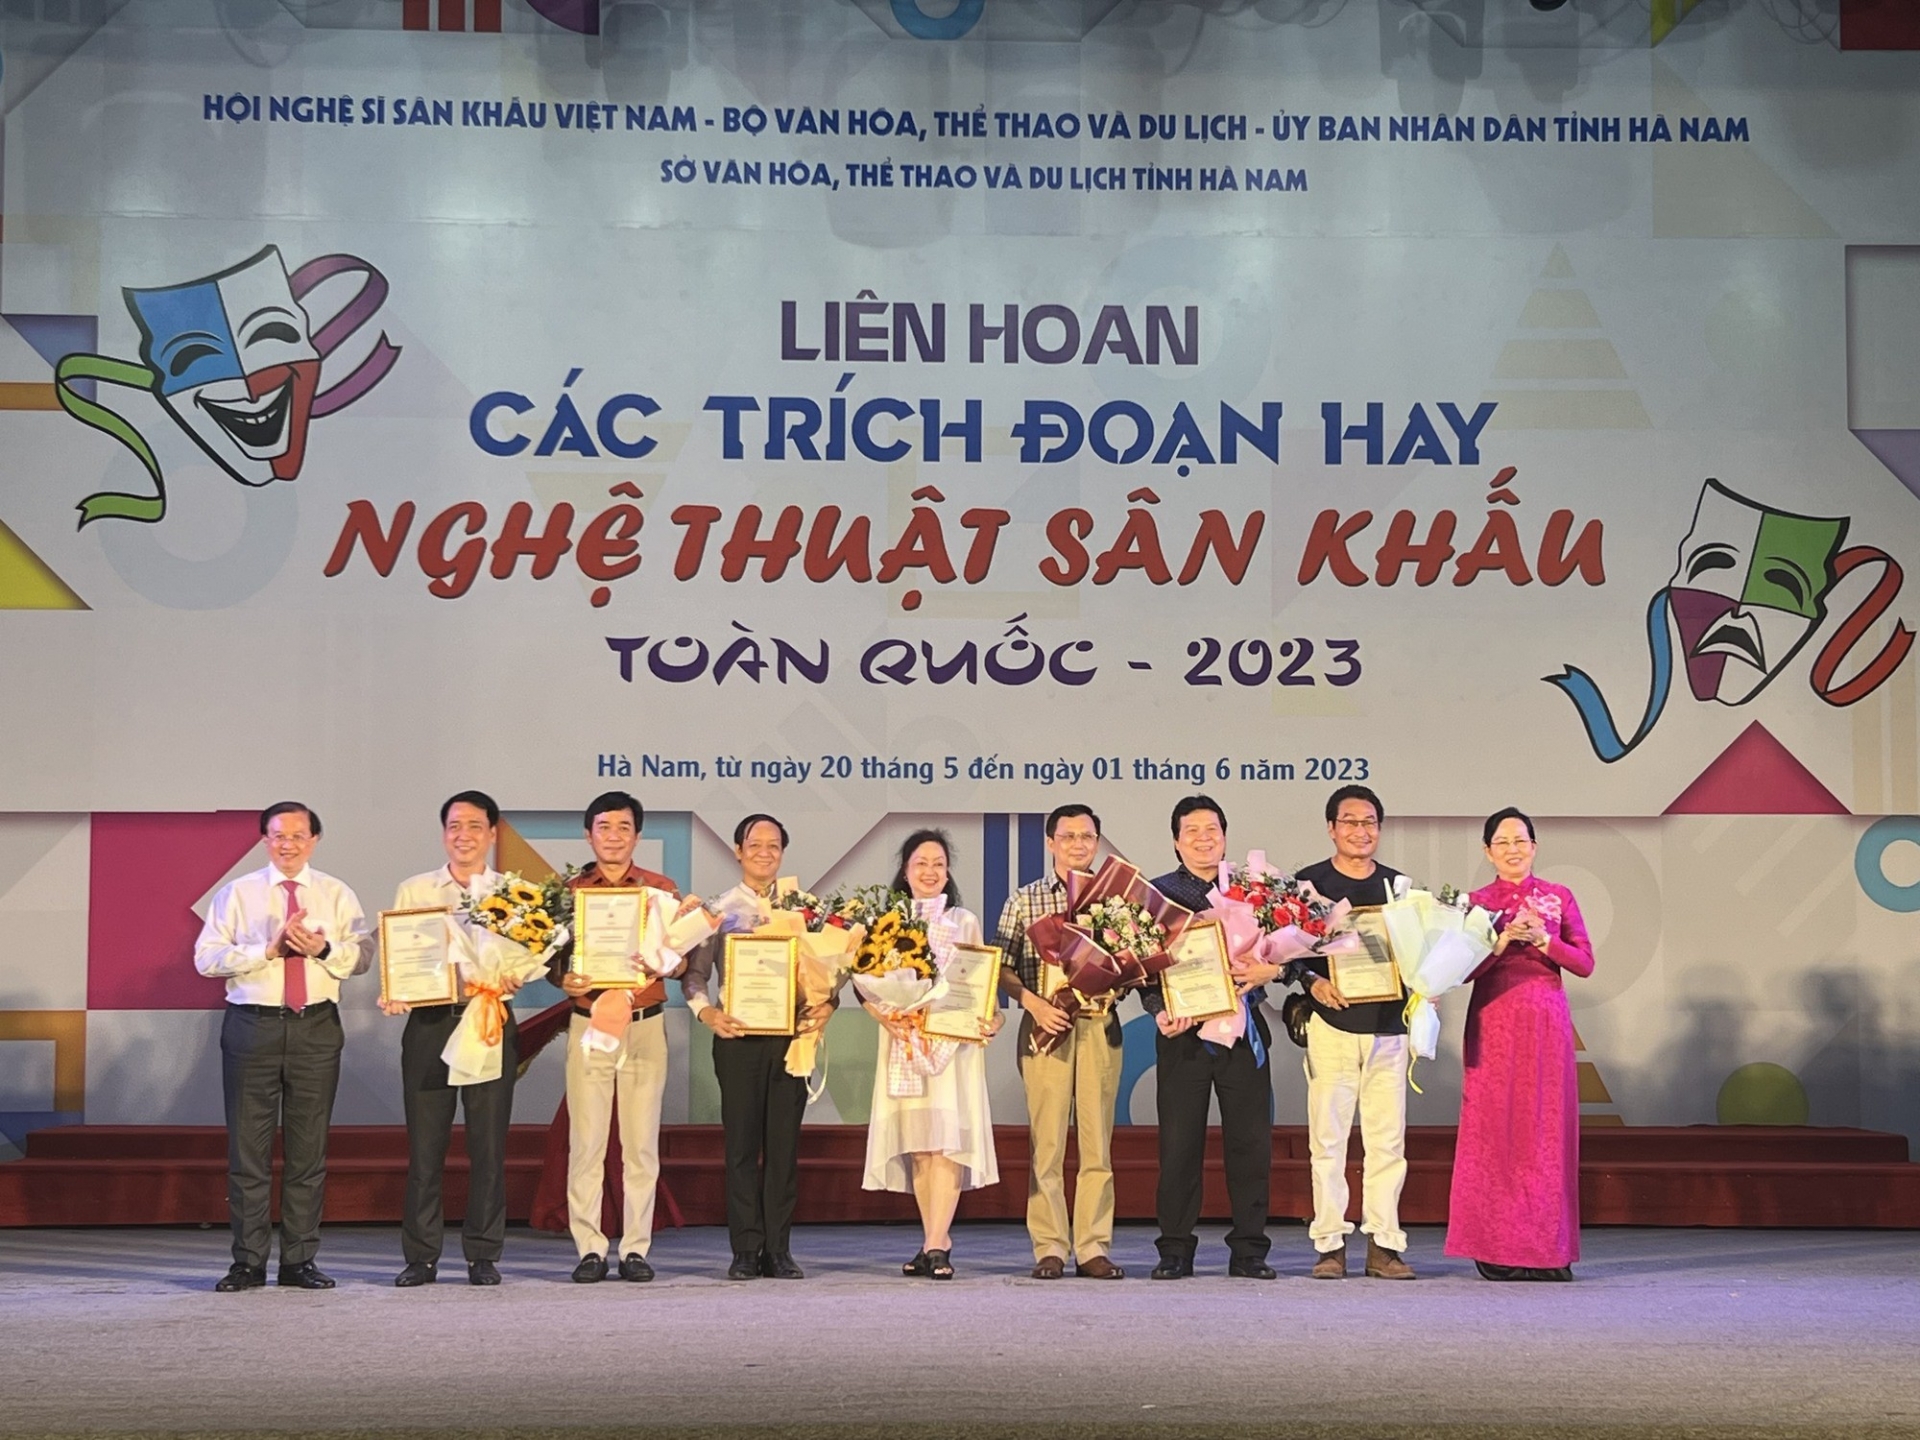 Đà Nẵng đoạt nhiều giải thưởng tại Liên hoan các trích đoạn hay nghệ thuật sân khấu toàn quốc